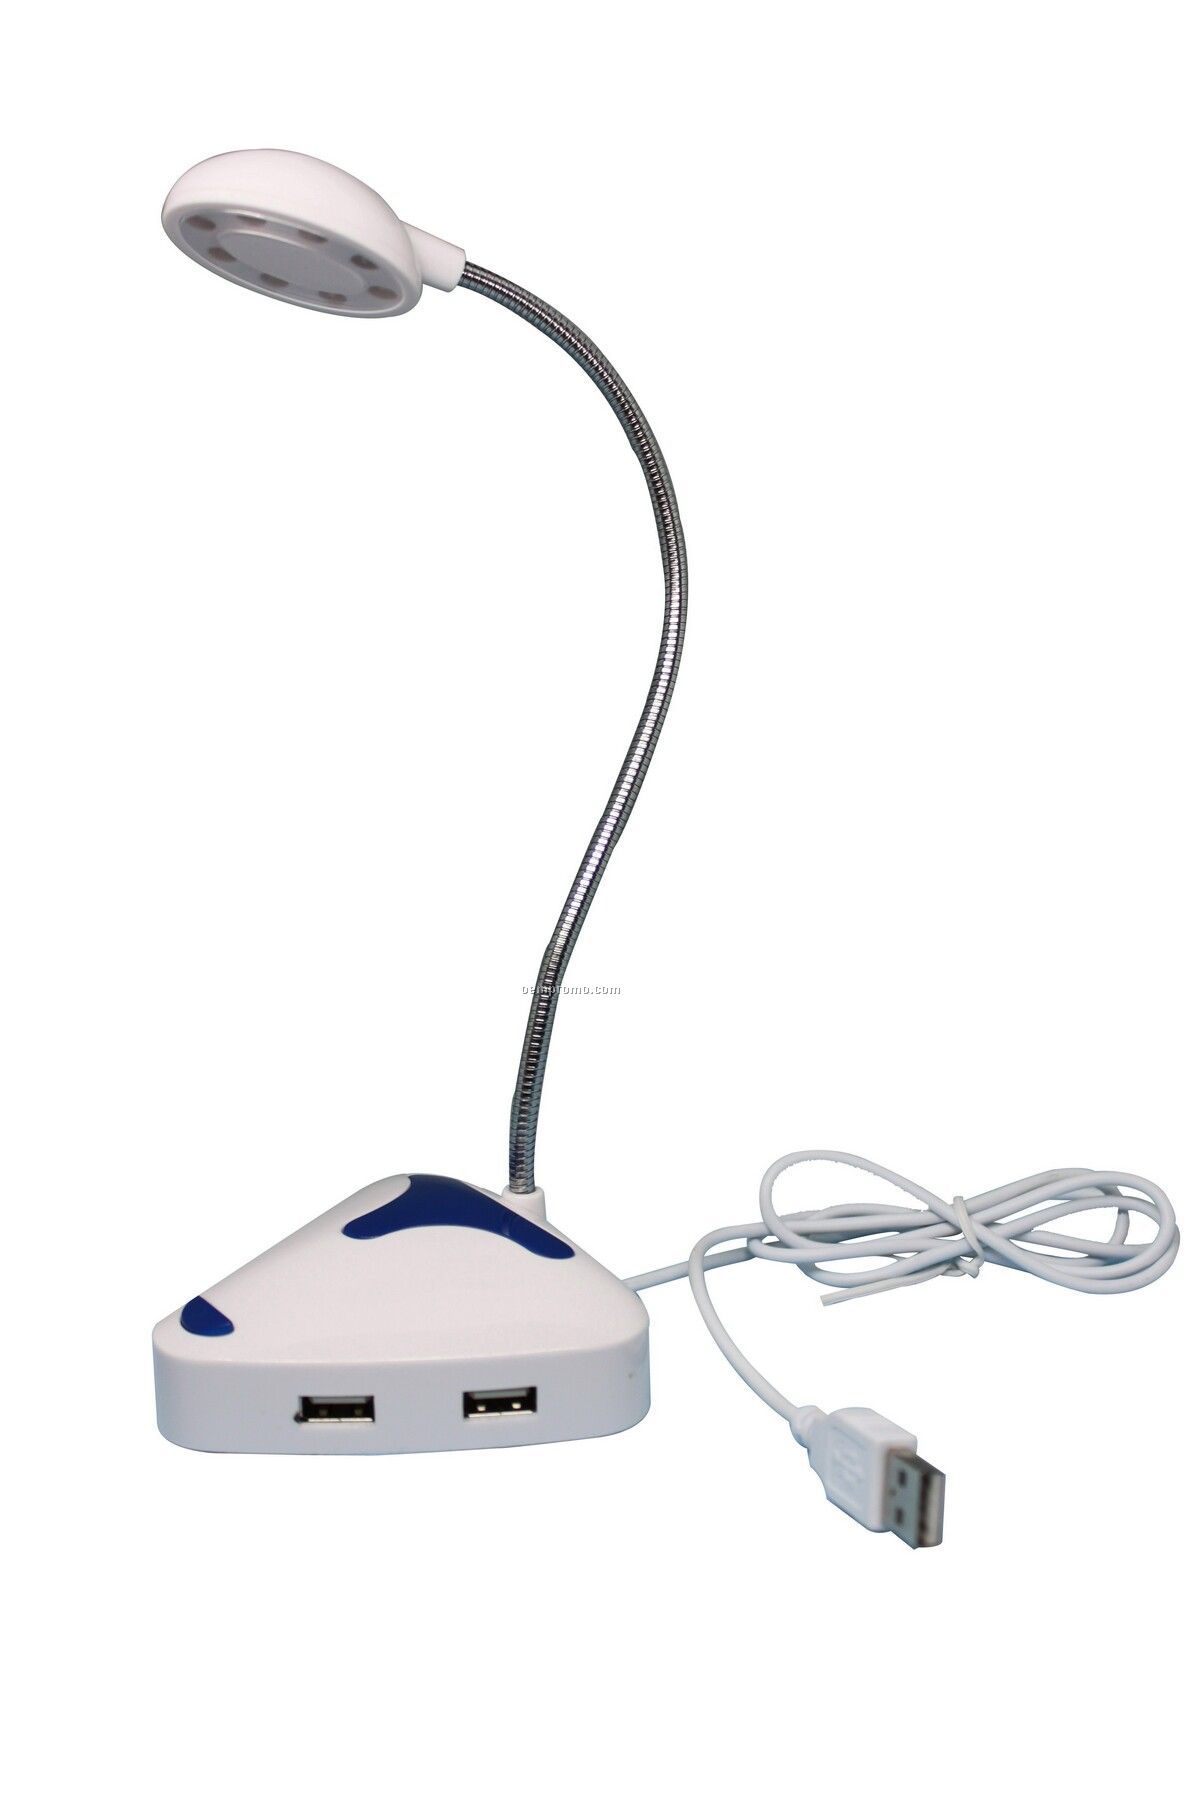 USB Eye Protection Lamp2.0 With USB Hub